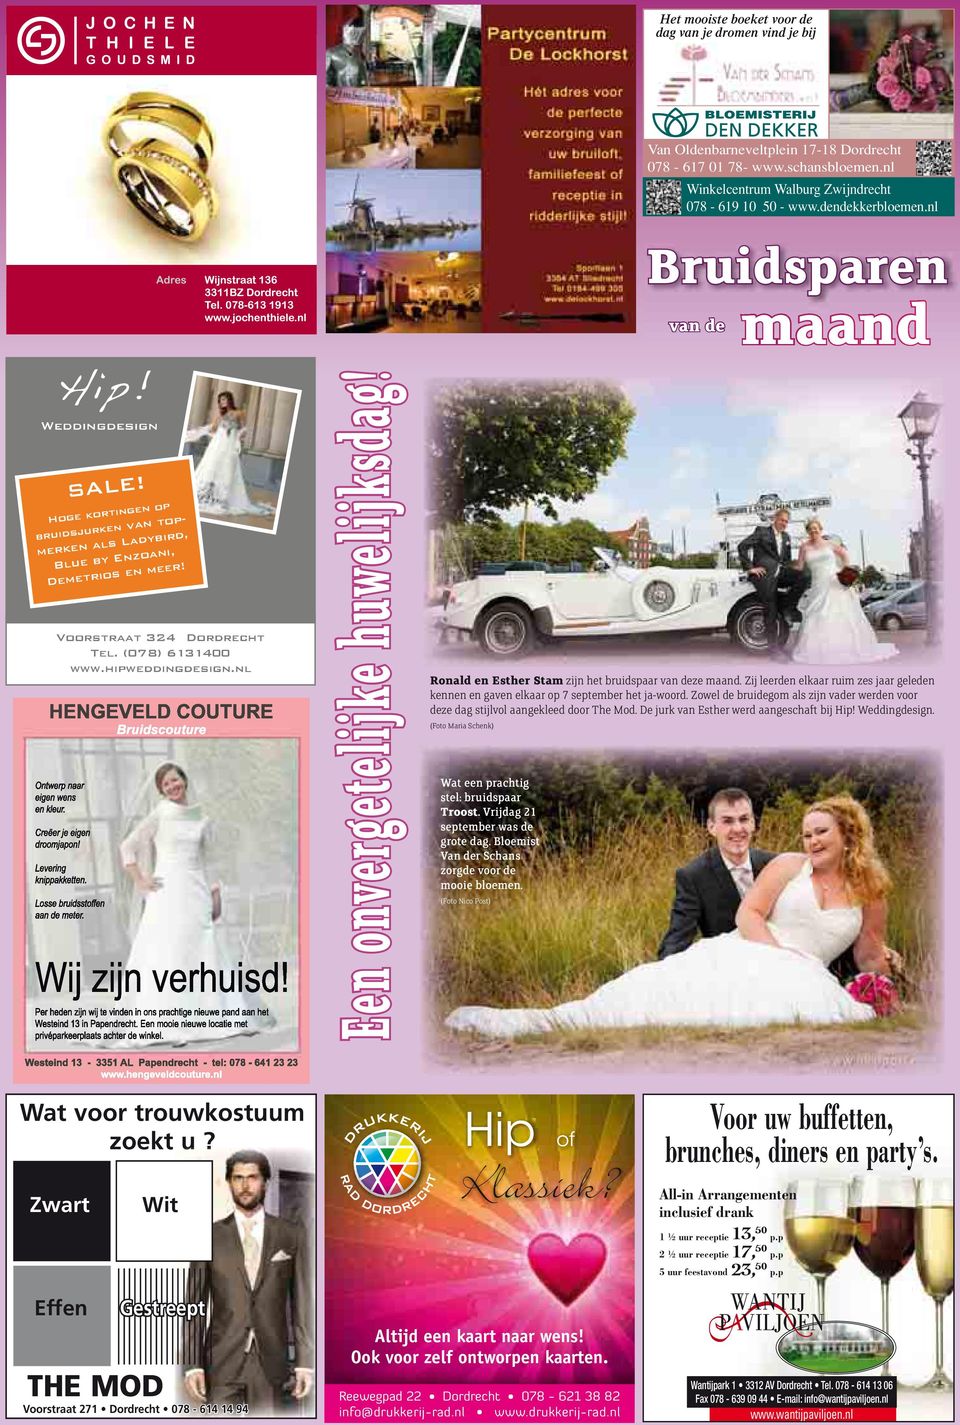 Voorstraat 324 Dordrecht Tel. (078) 6131400 www.hipweddingdesign.nl Een onvergetelijke huwelijksdag! Bruidsparen van de maand Ronald en Esther Stam zijn het bruidspaar van deze maand.